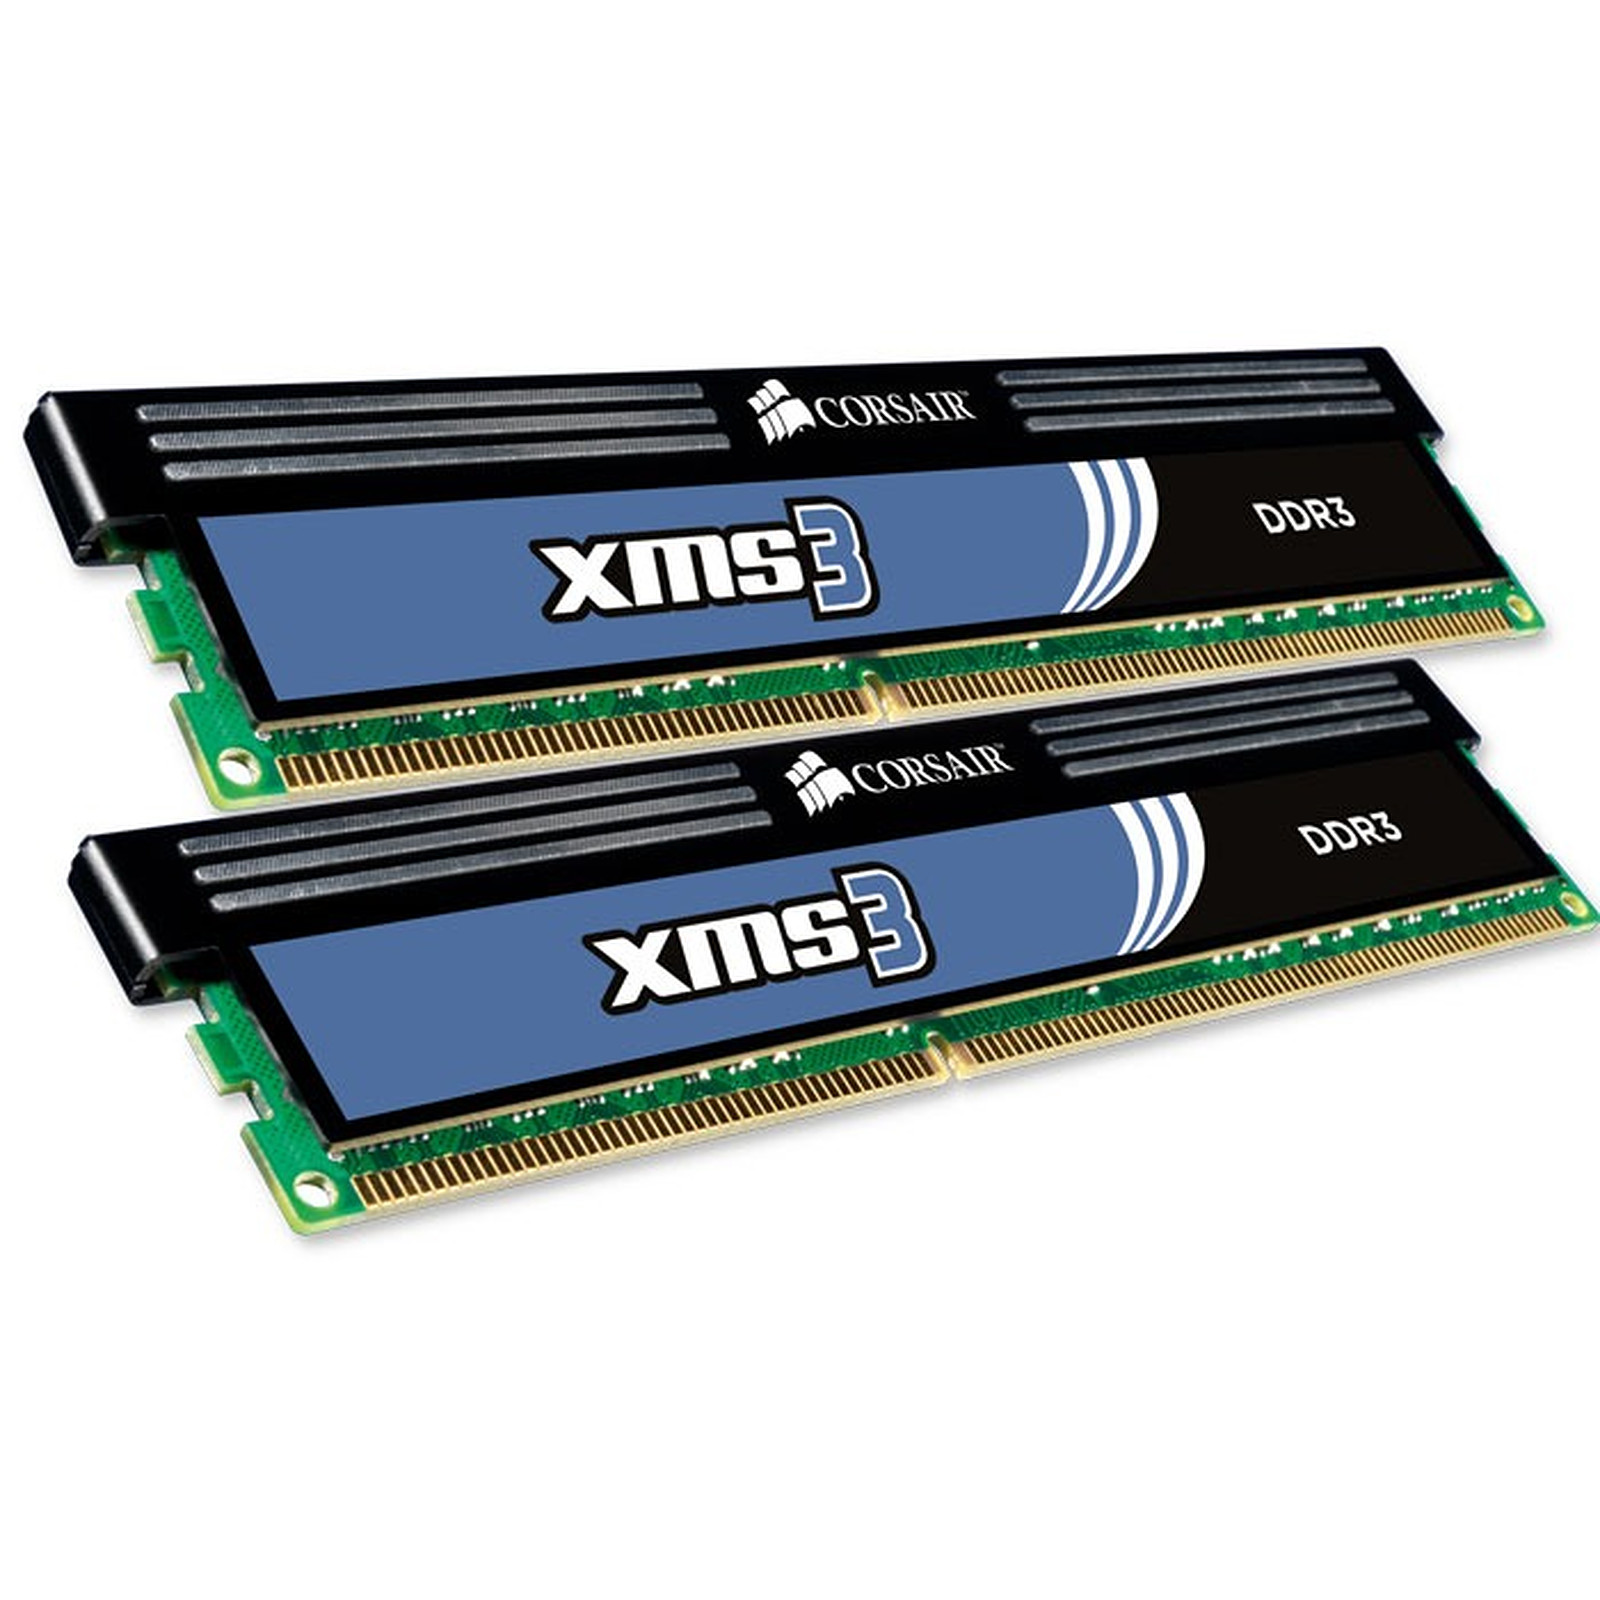 Corsair XMS3 16 Go (2 x 8 Go) DDR3 1333 MHz CL9 - Memoire PC Corsair